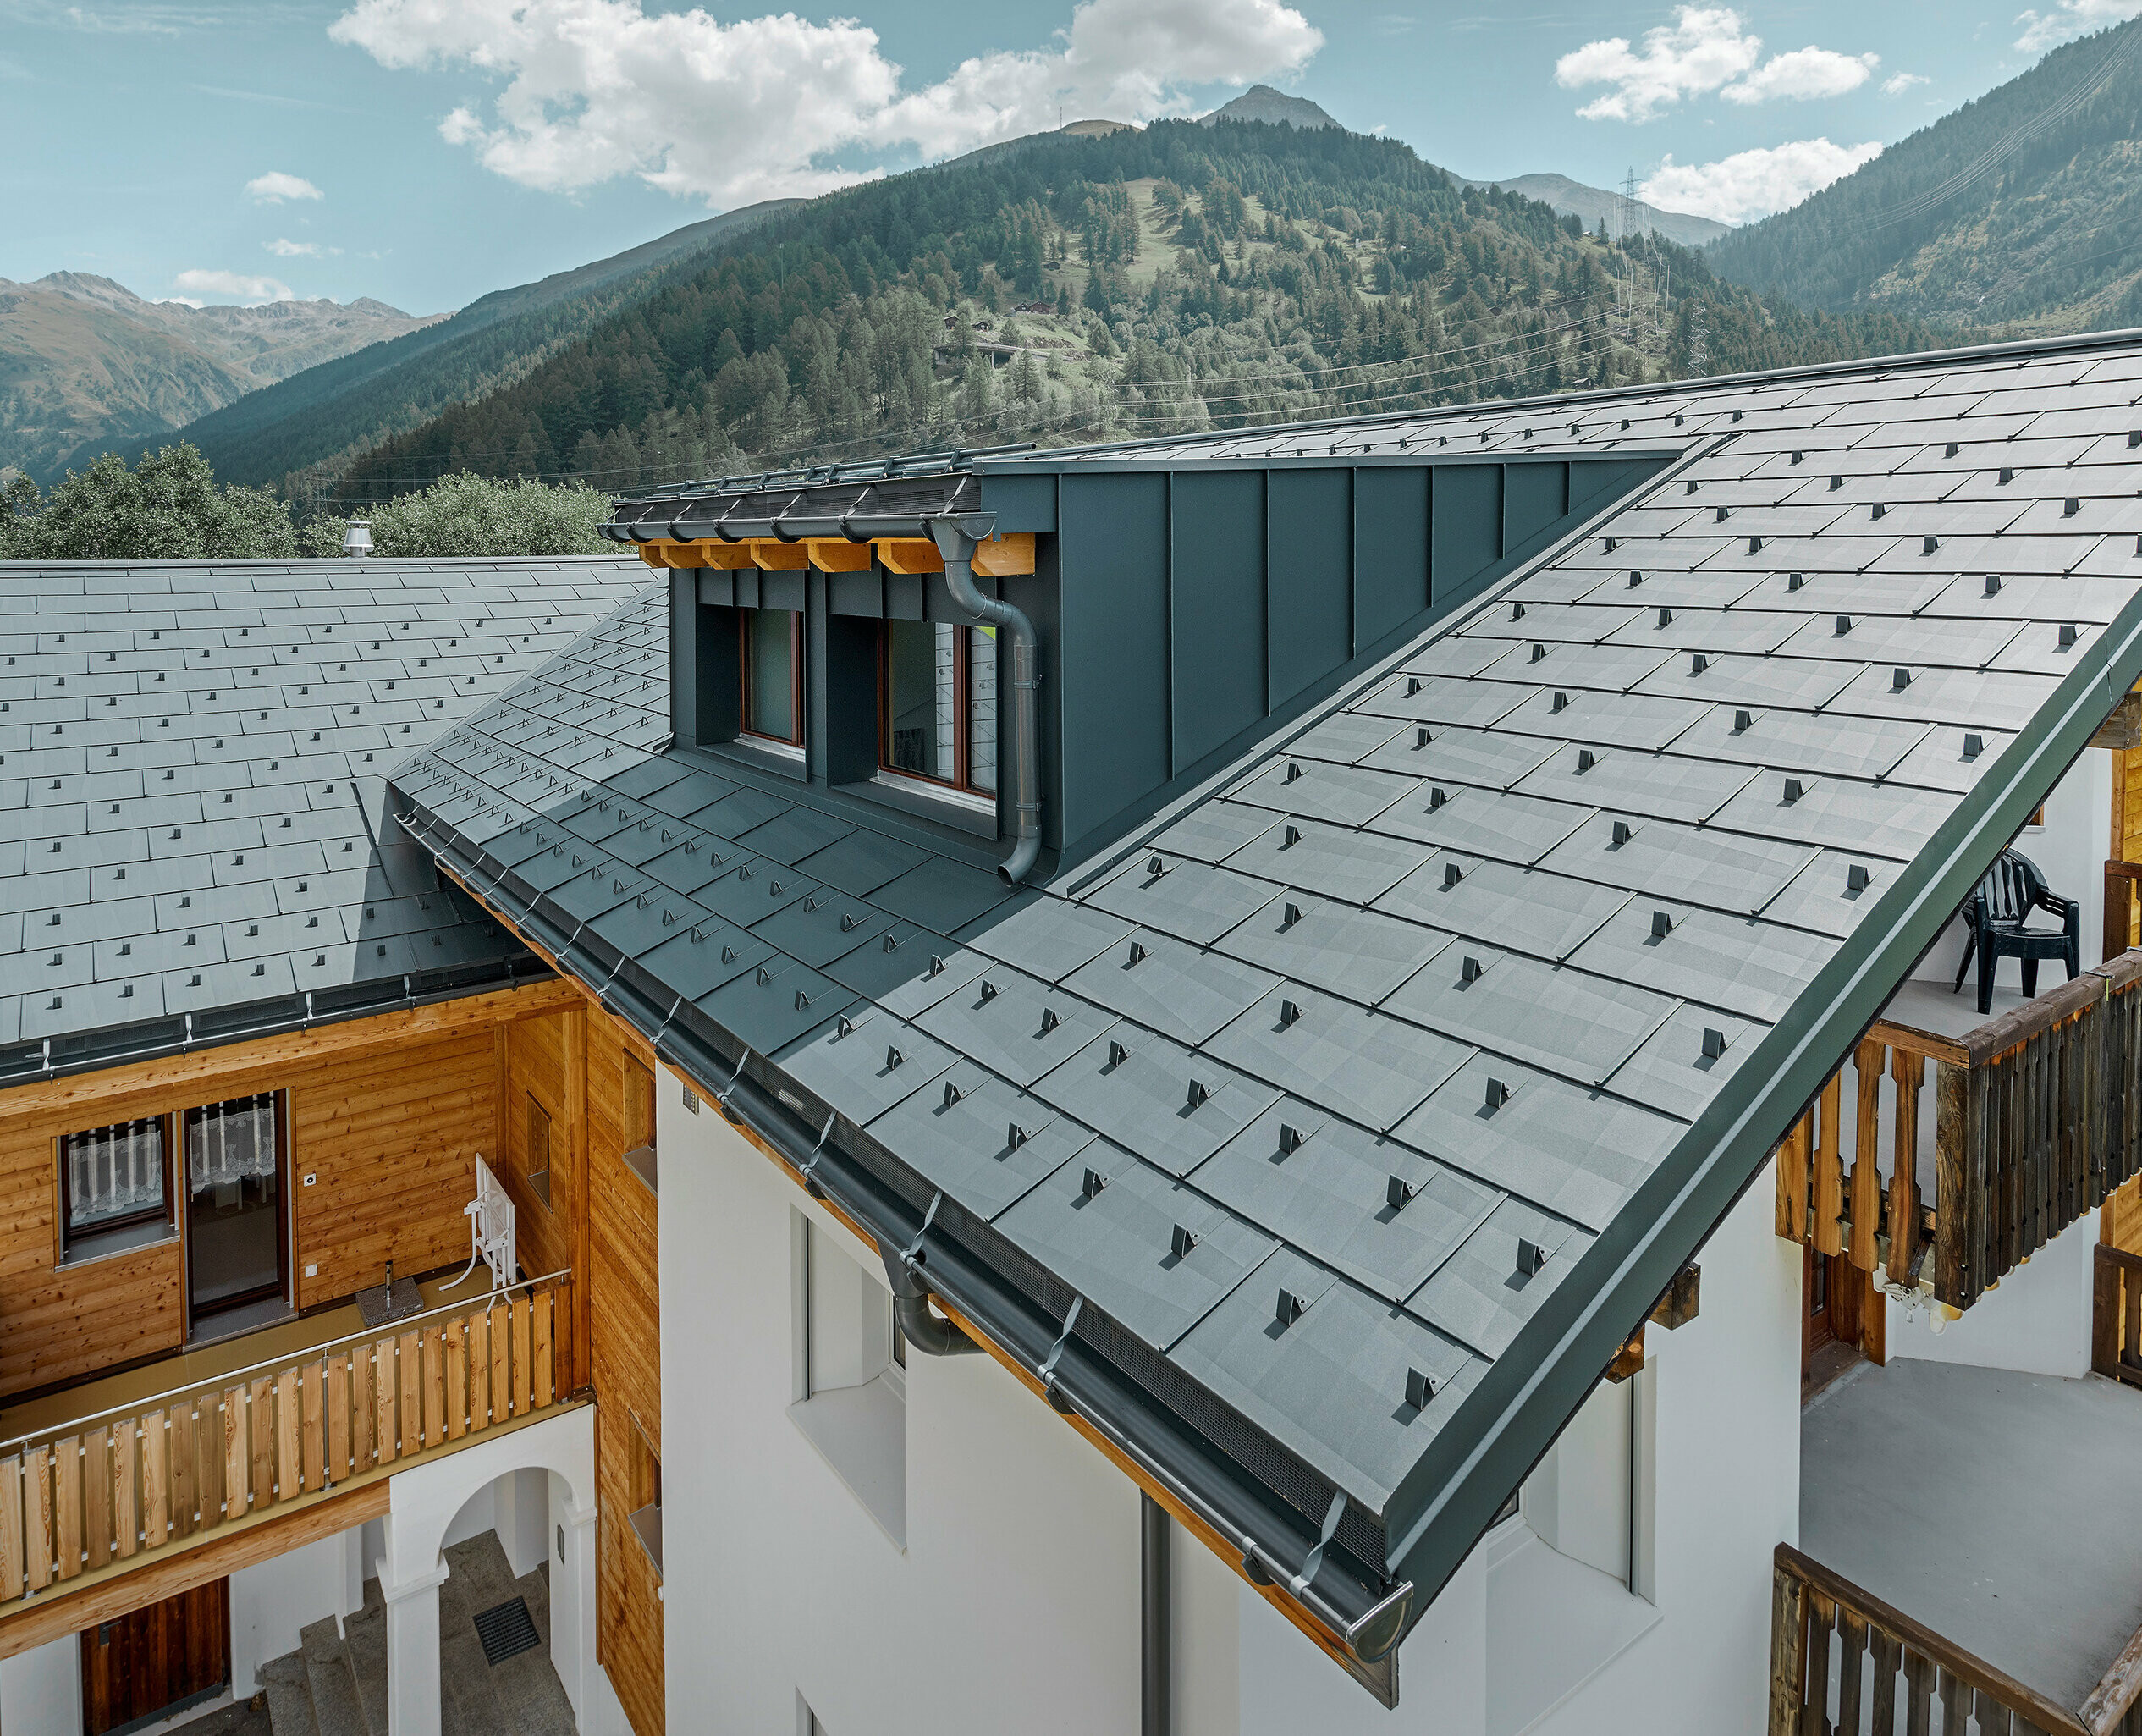 Immeuble d’habitation comportant une lucarne et un toit à deux pans recouvert de panneaux de toit FX.12 PREFA couleur anthracite. On aperçoit des montagnes en arrière-plan.